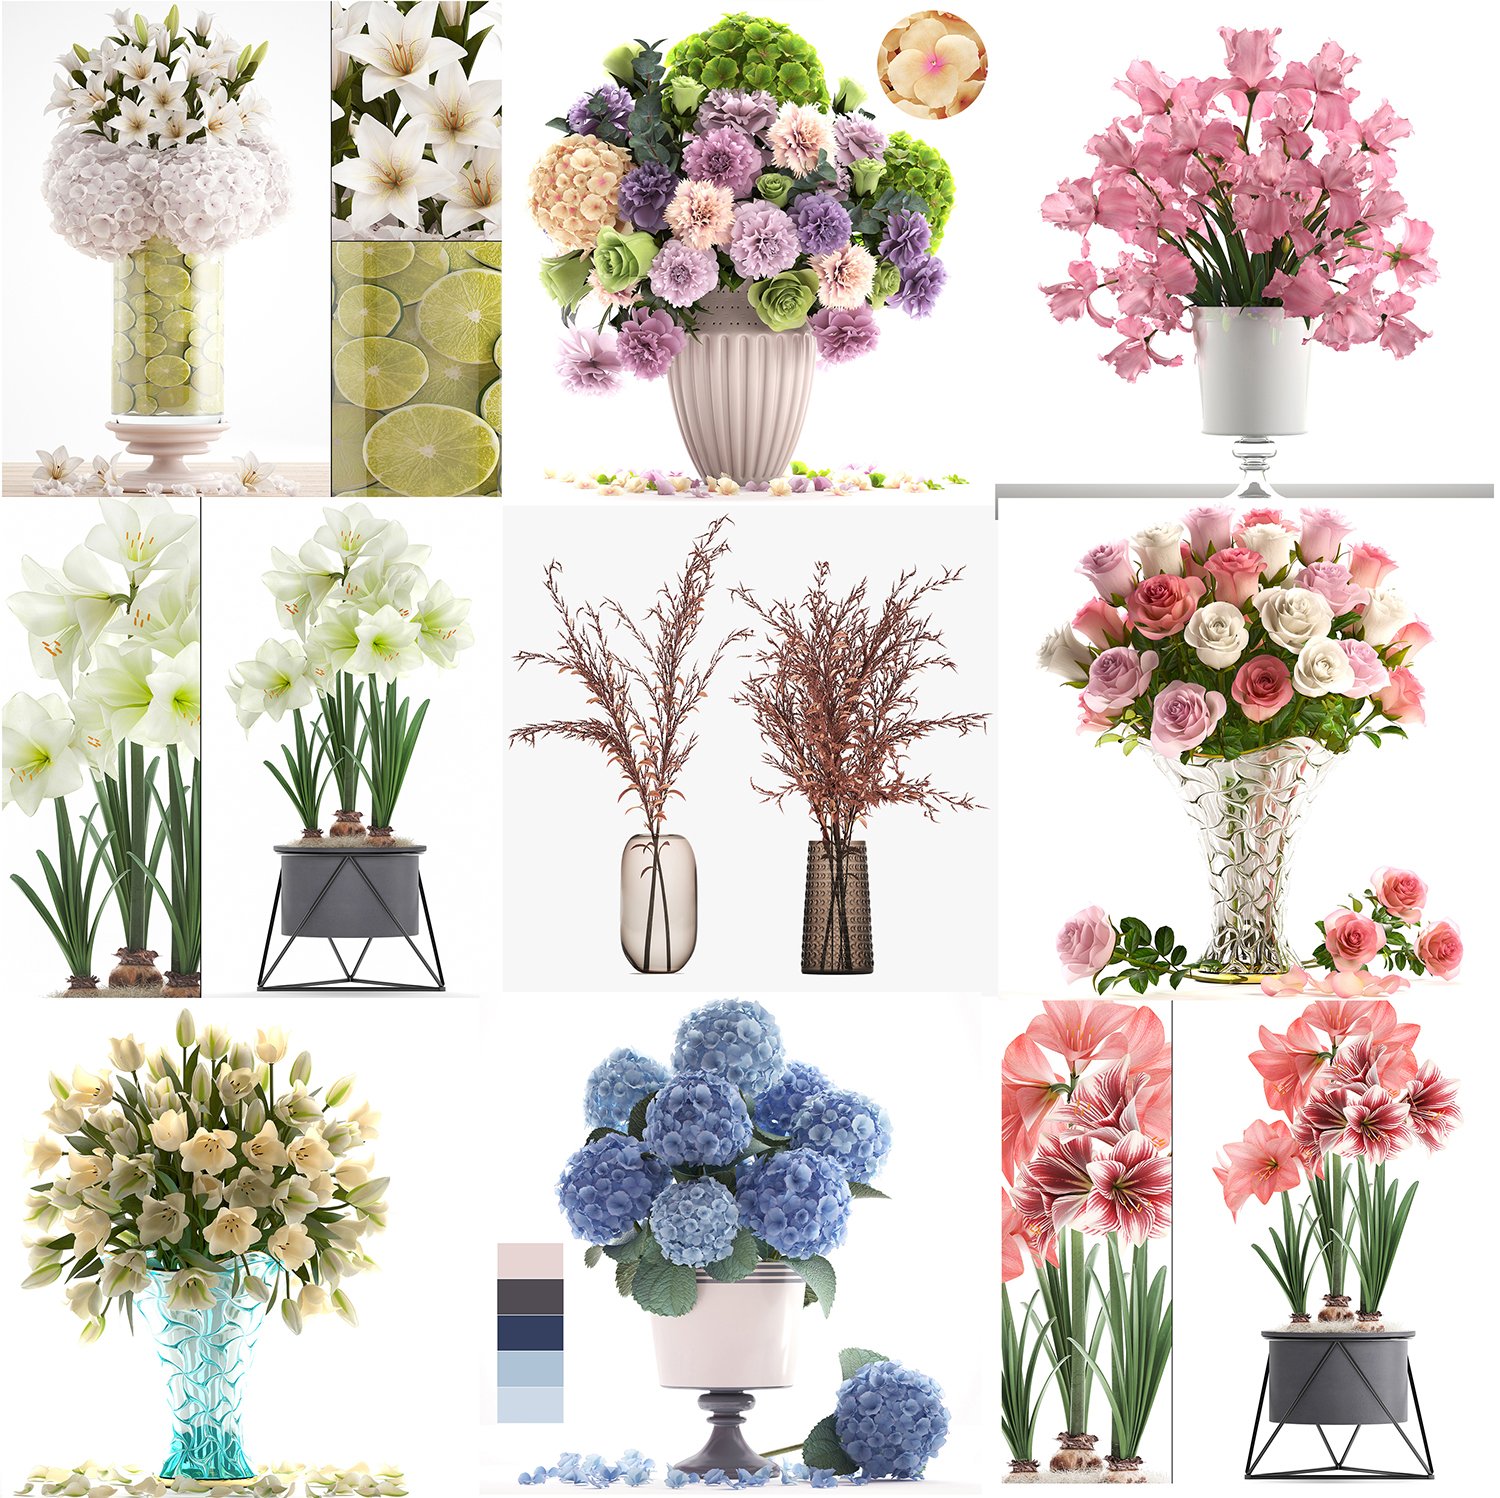 13,598 Mini Bouquets Images, Stock Photos, 3D objects, & Vectors